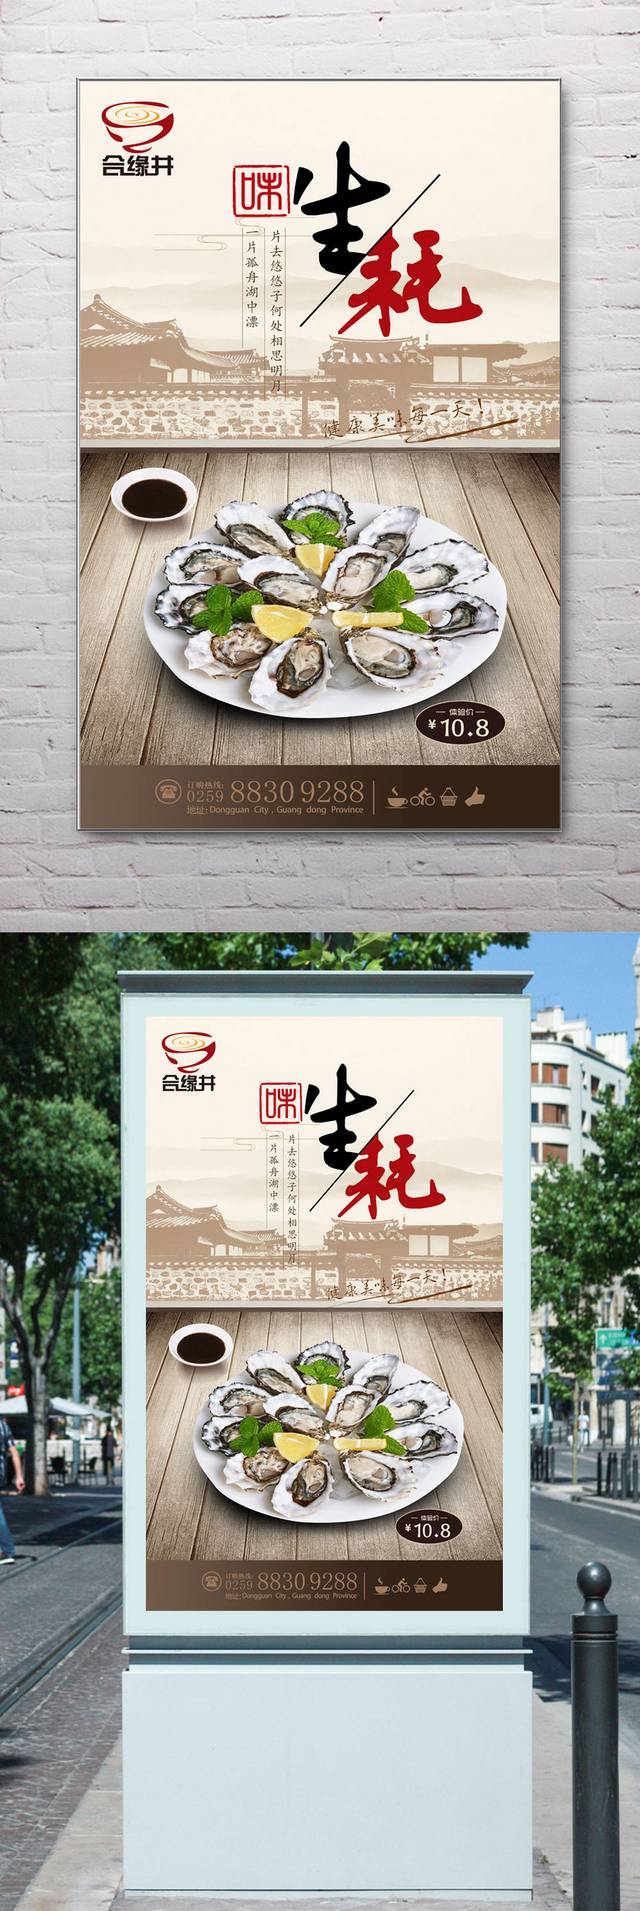 中国风生蚝宣传海报设计